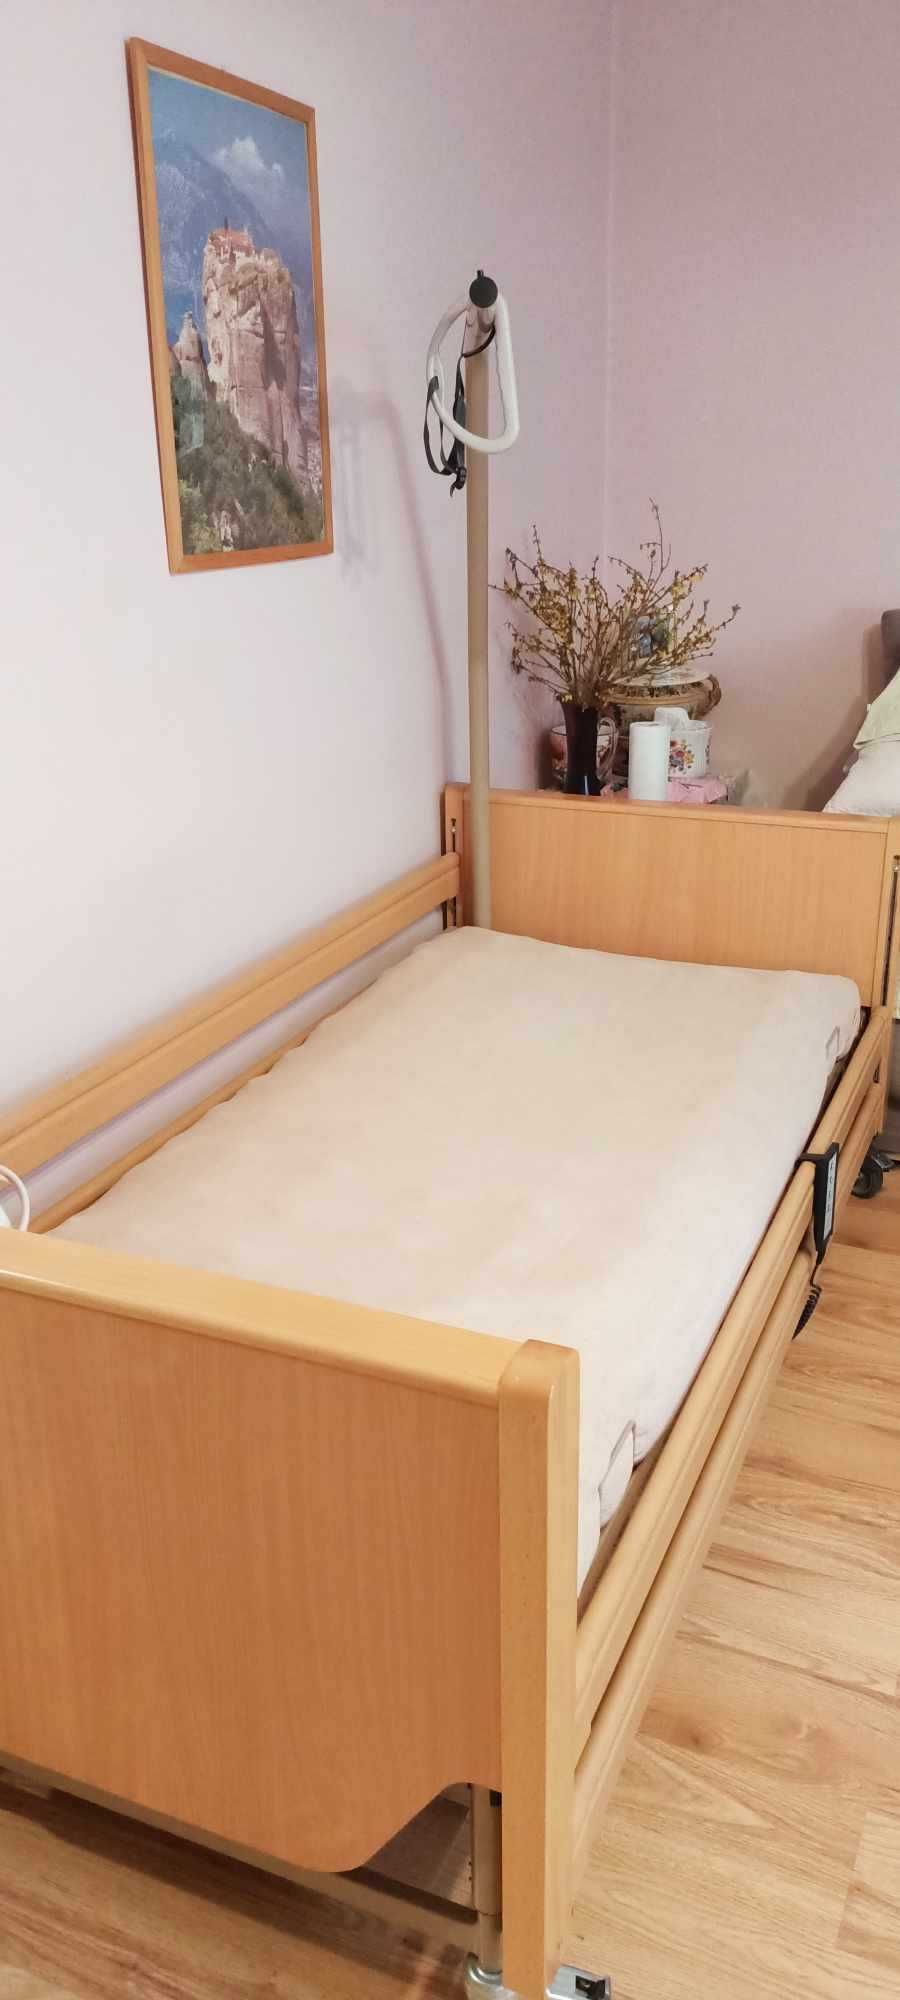 Łóżko rehabilitacyjne, używane